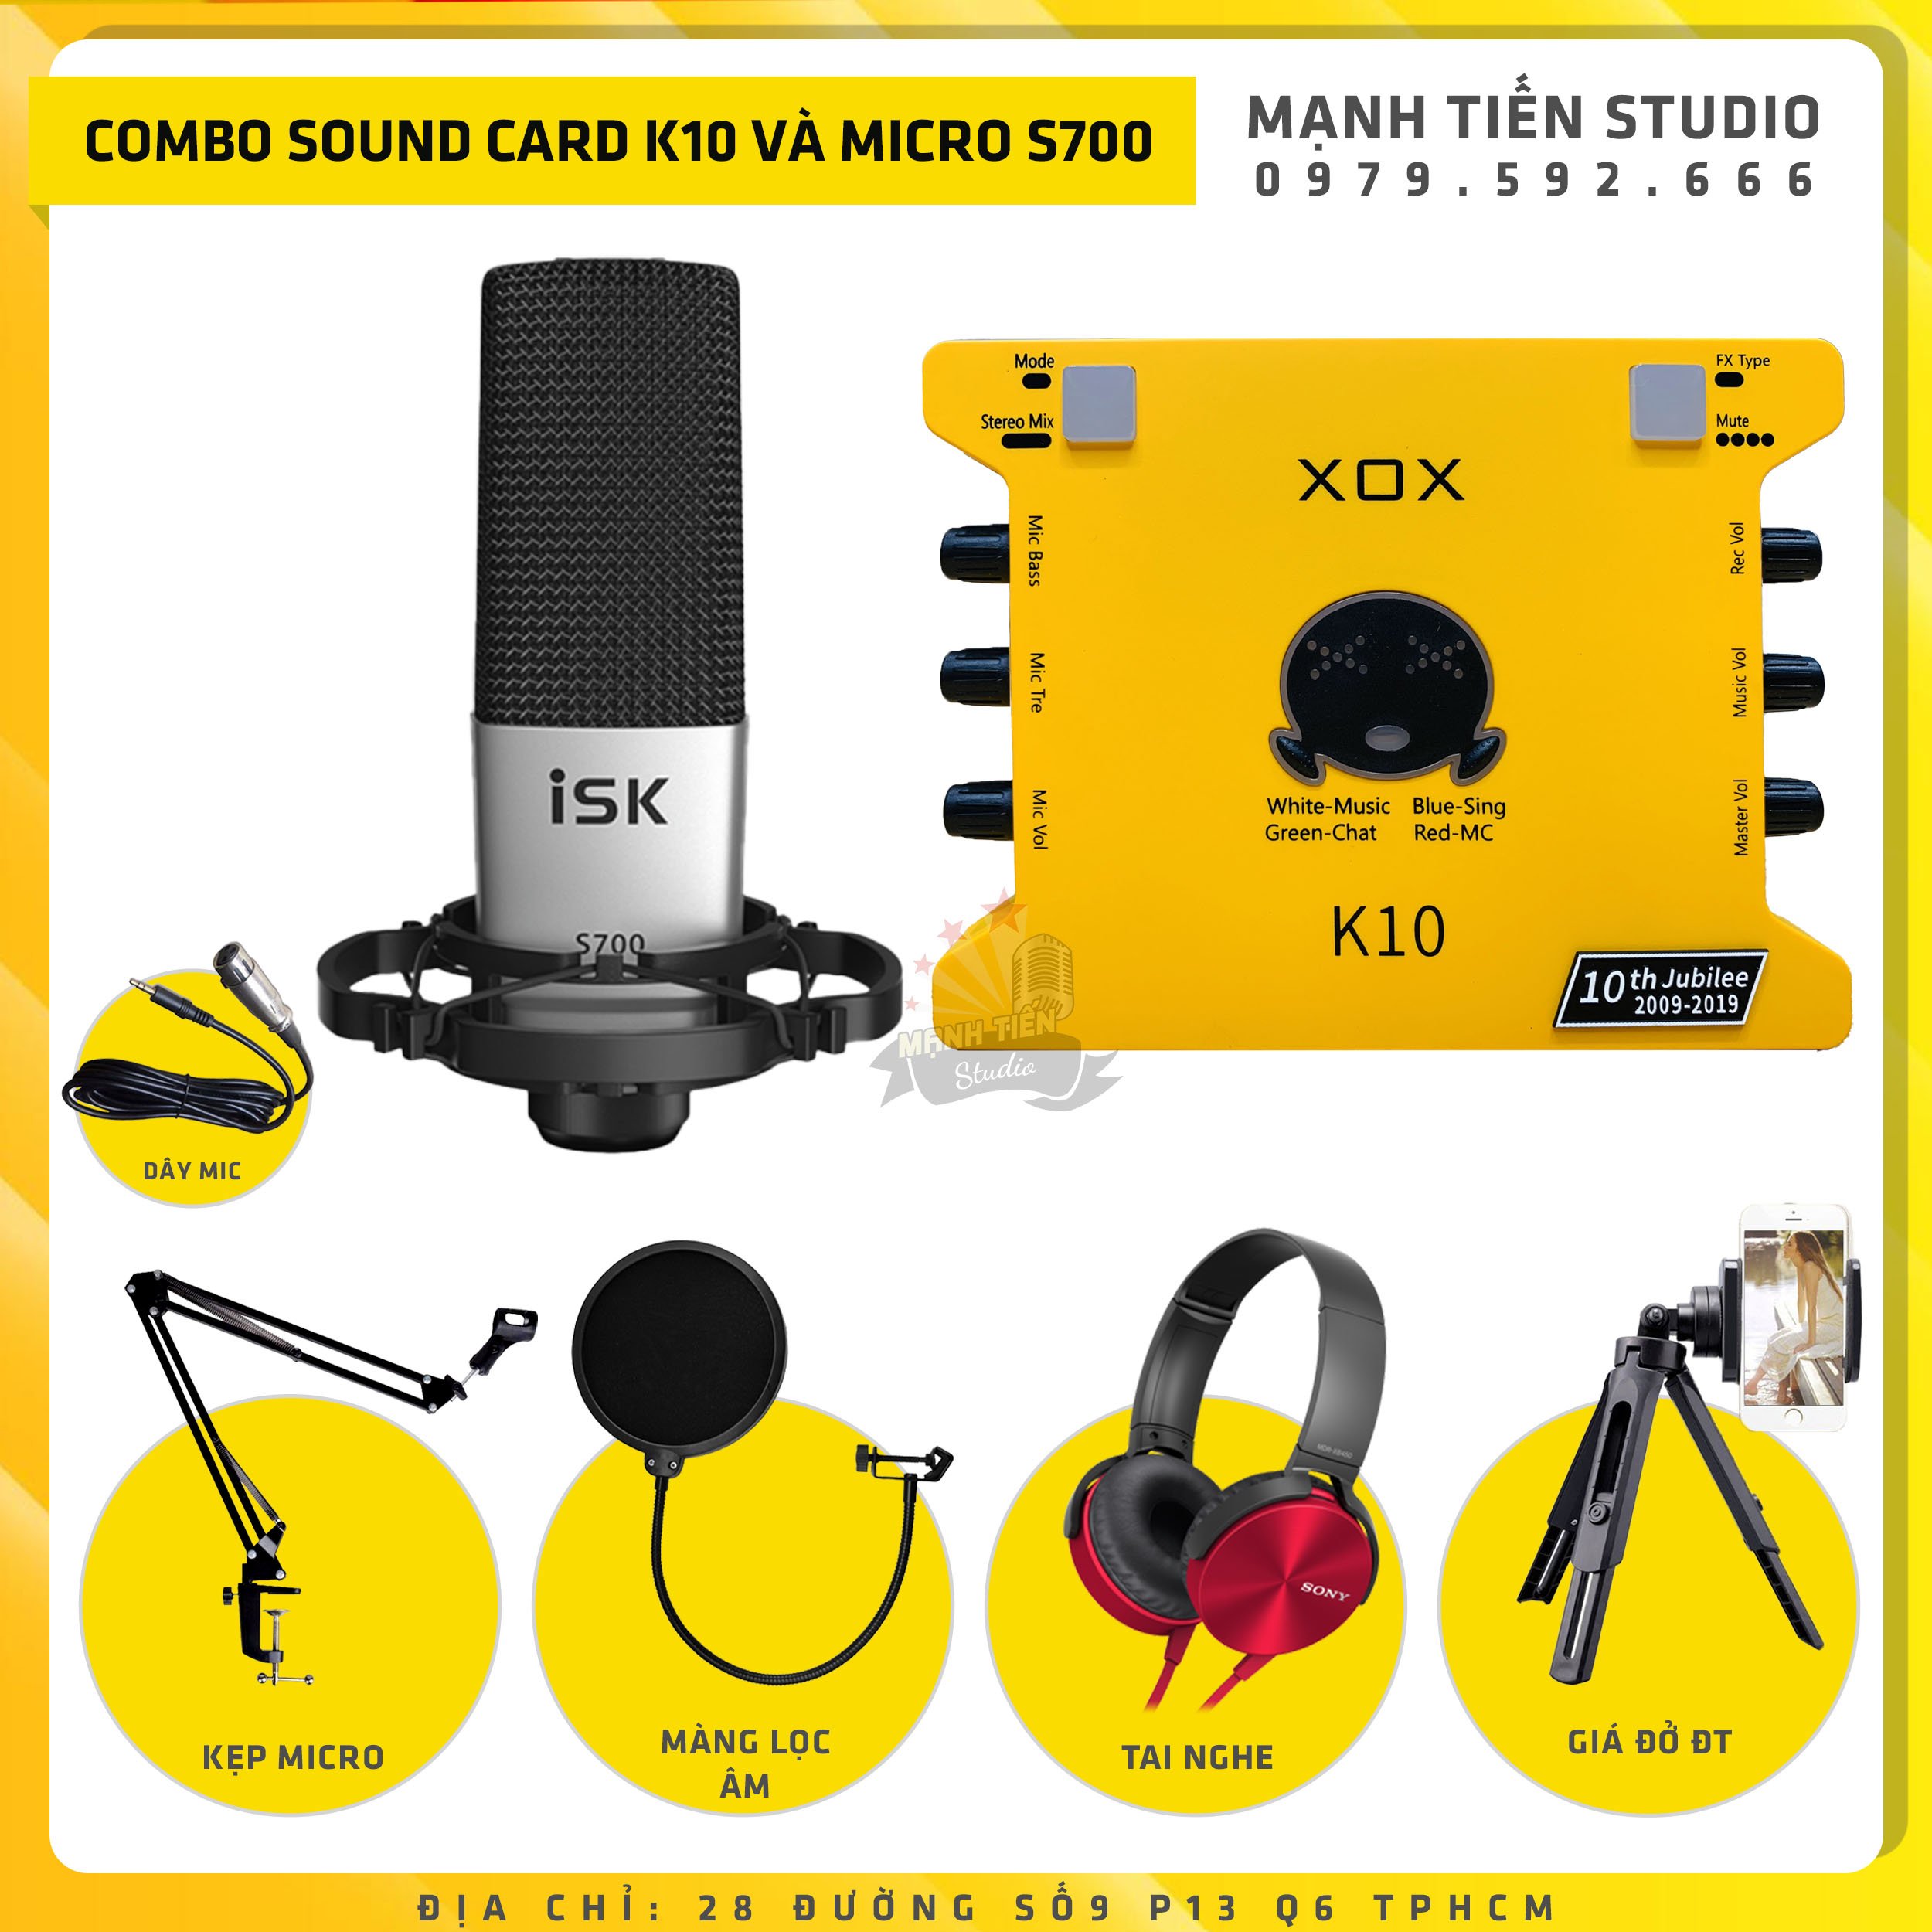 [Combo livestream 2021] Bộ Combo livestream Micro ISK S700 + Sound card XOX K10 jubilee - Kèm full phụ kiện kẹp micro, màng lọc, tai nghe chụp tai, giá đỡ đt - Thu âm, livestream, karaoke online chuyên nghiệp trên cả điện thoại máy tính - Chính hãng